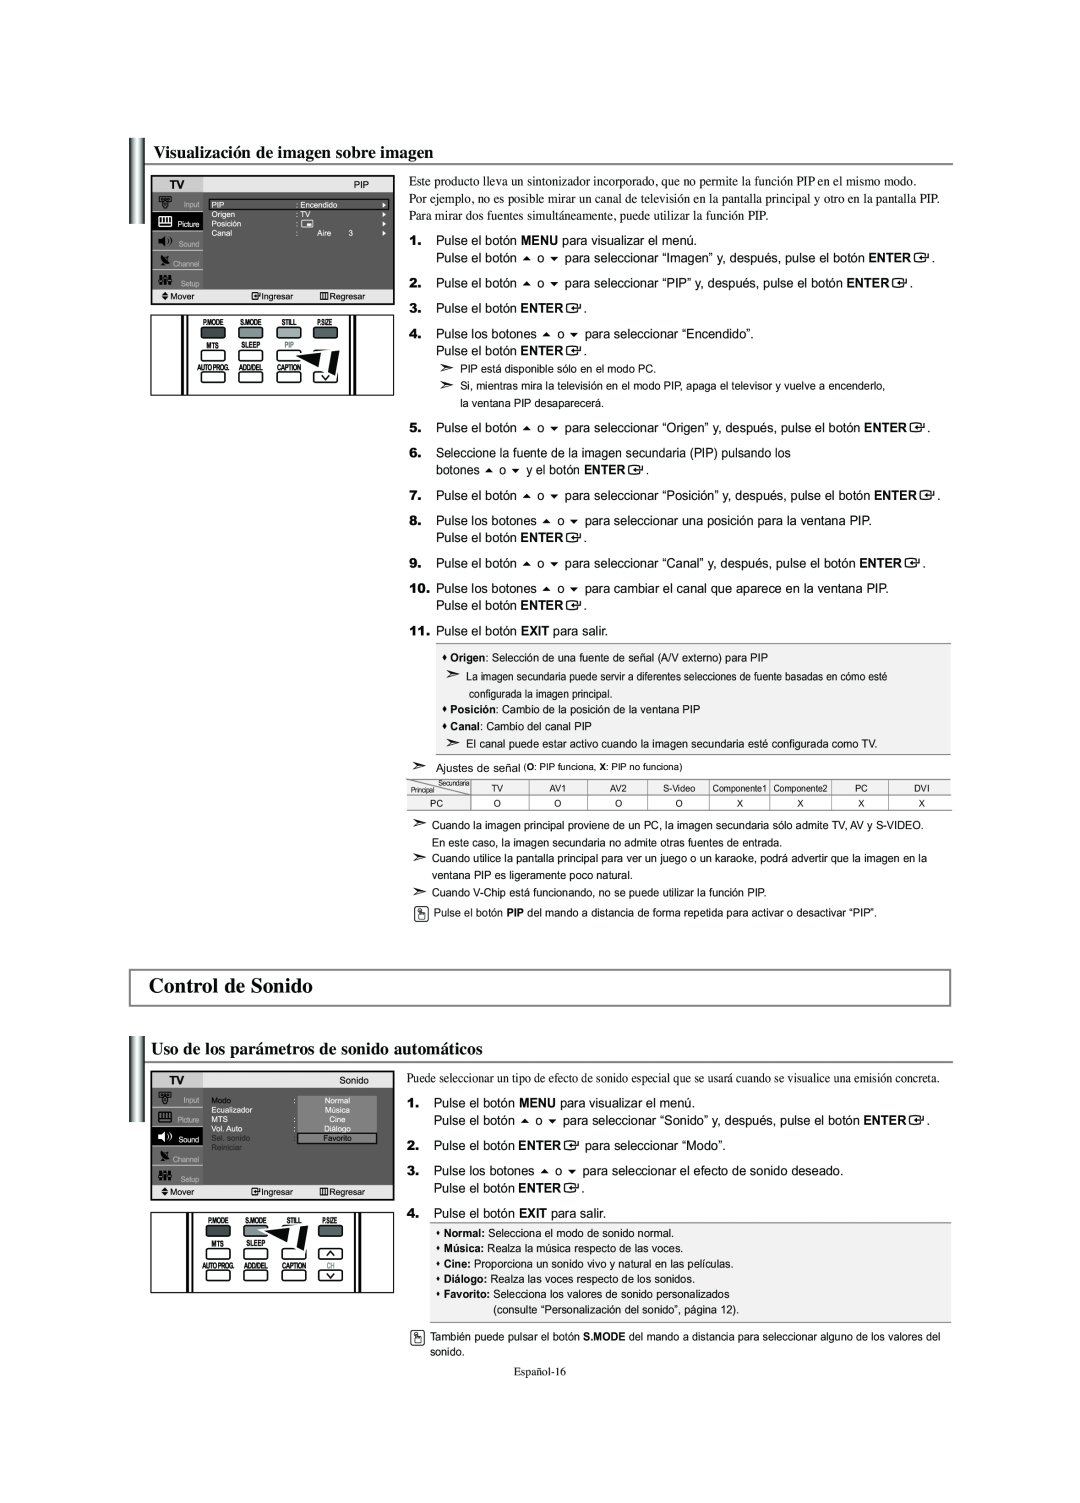 Samsung LN-S2341W Control de Sonido, Visualización de imagen sobre imagen, Uso de los parámetros de sonido automáticos 